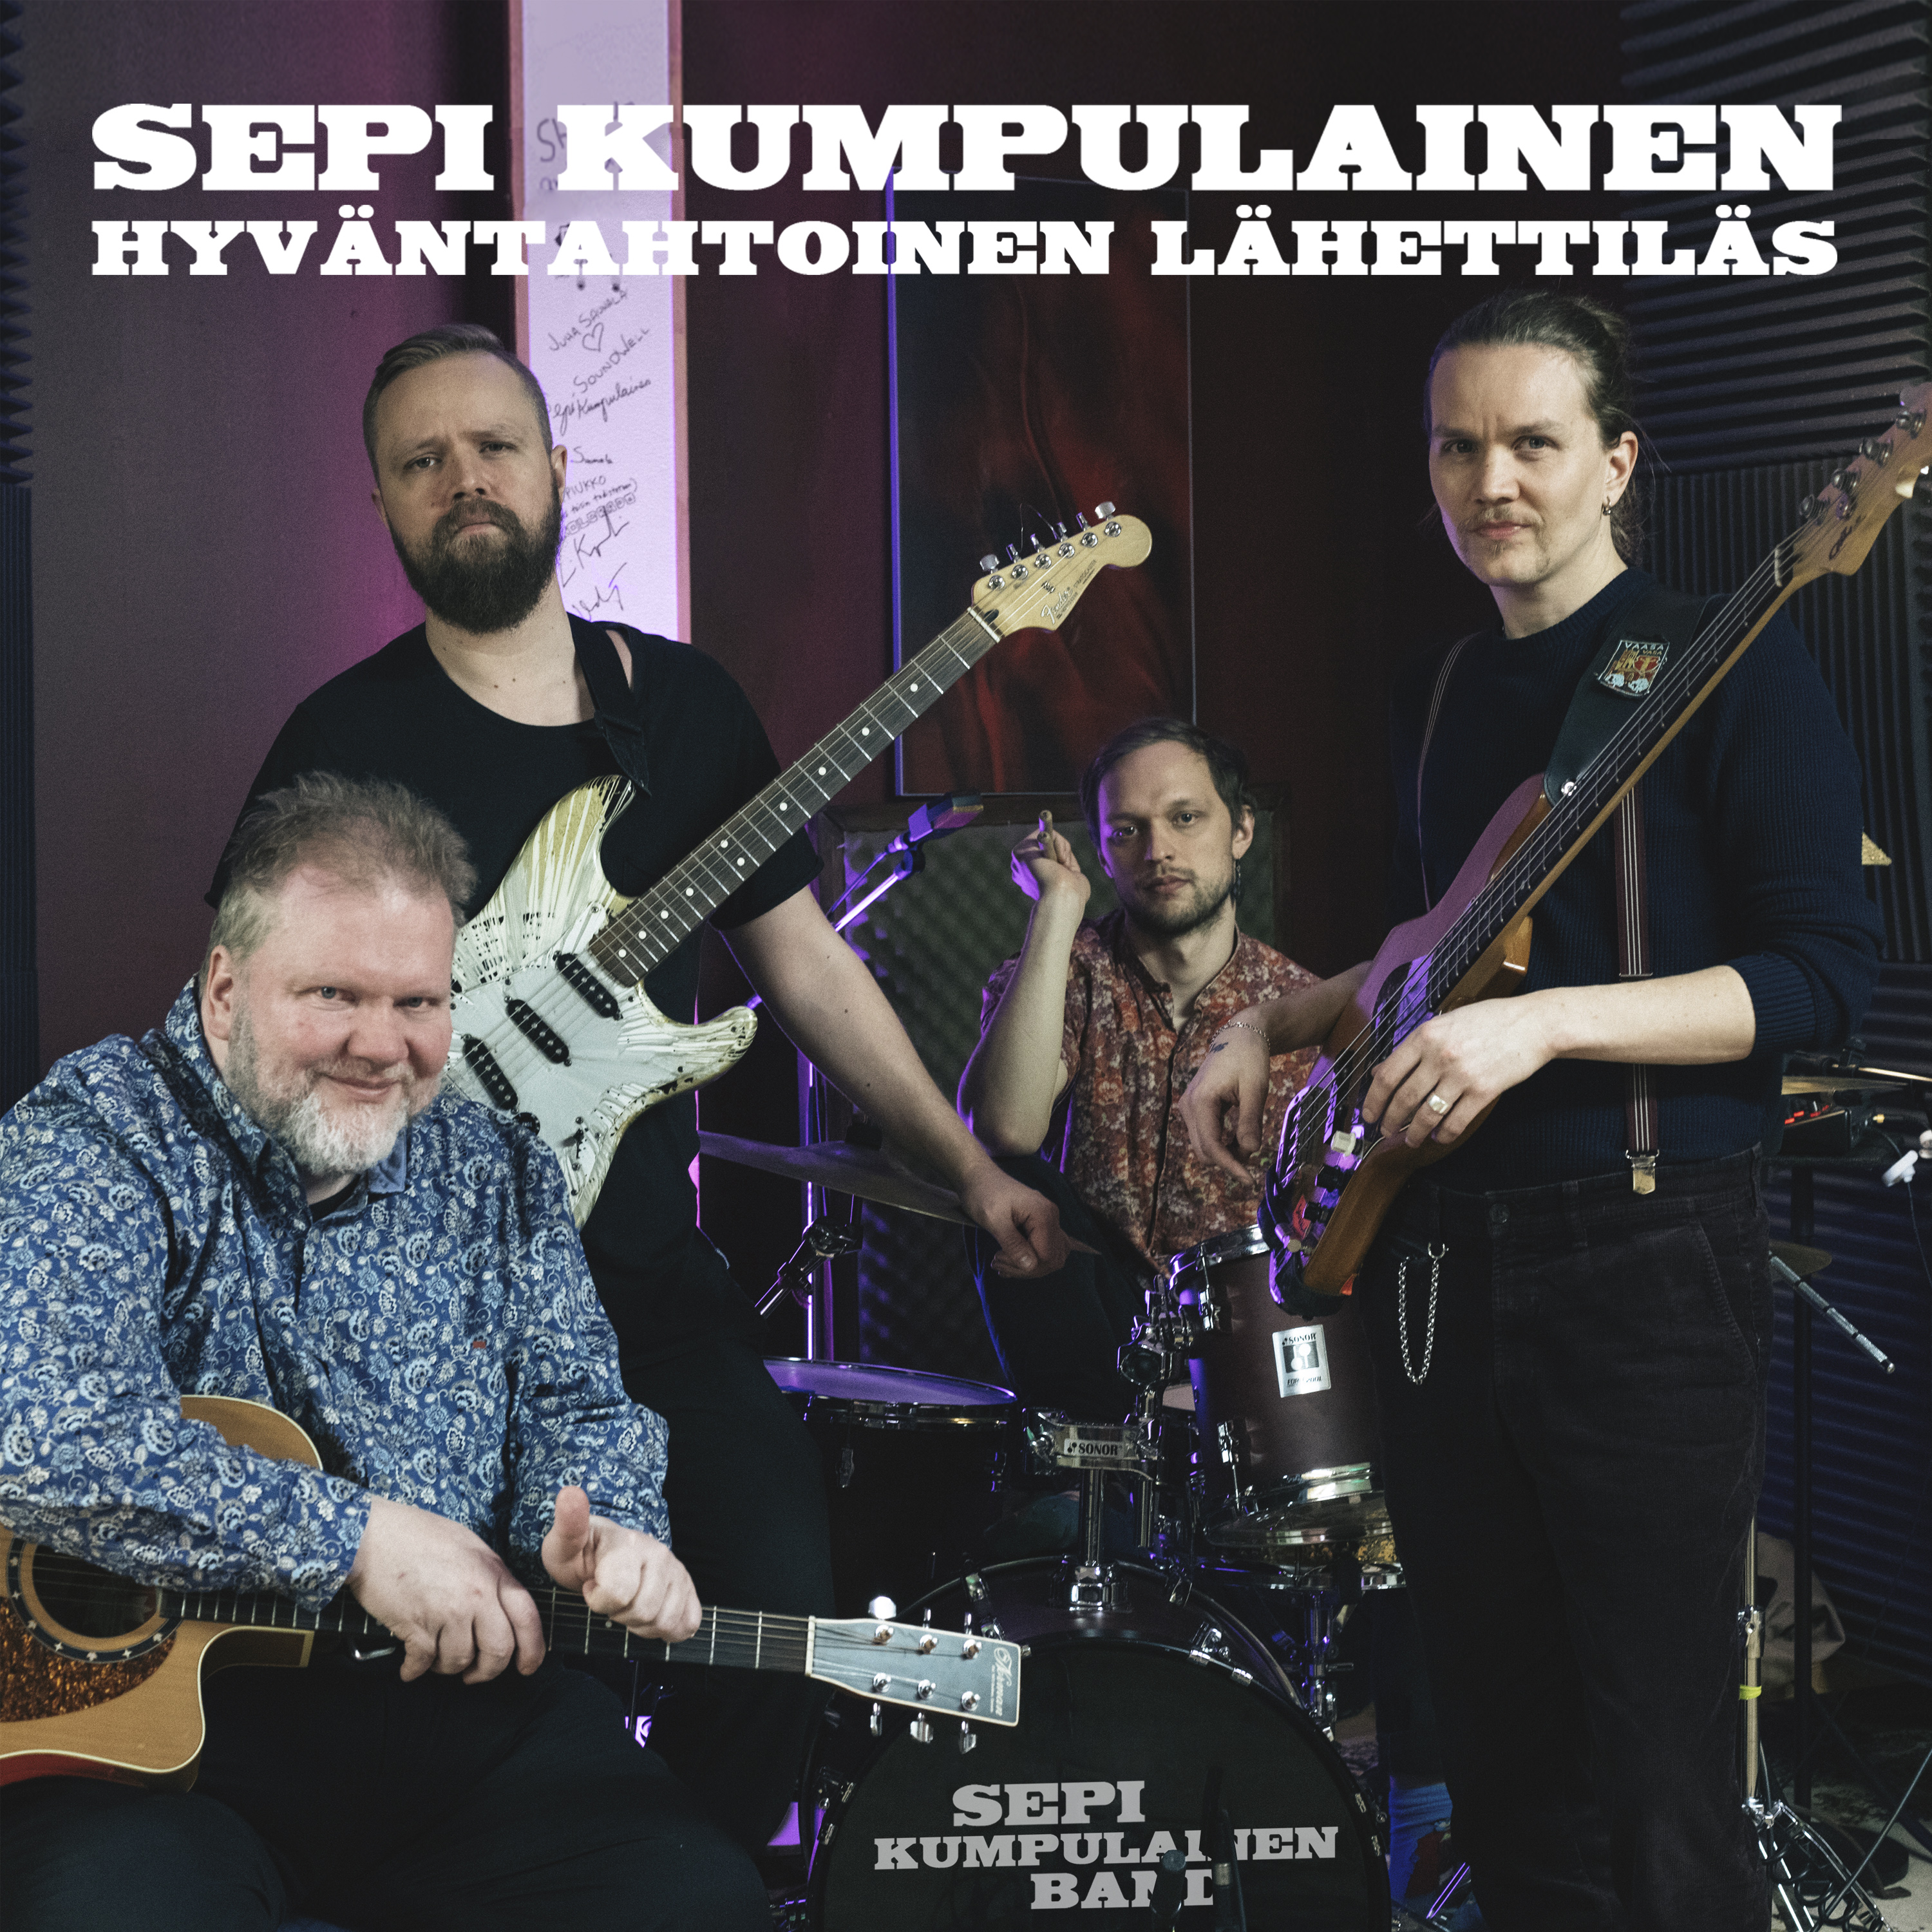 Sepi Kumpulainen - Hyv ntahtoinen l hettil s